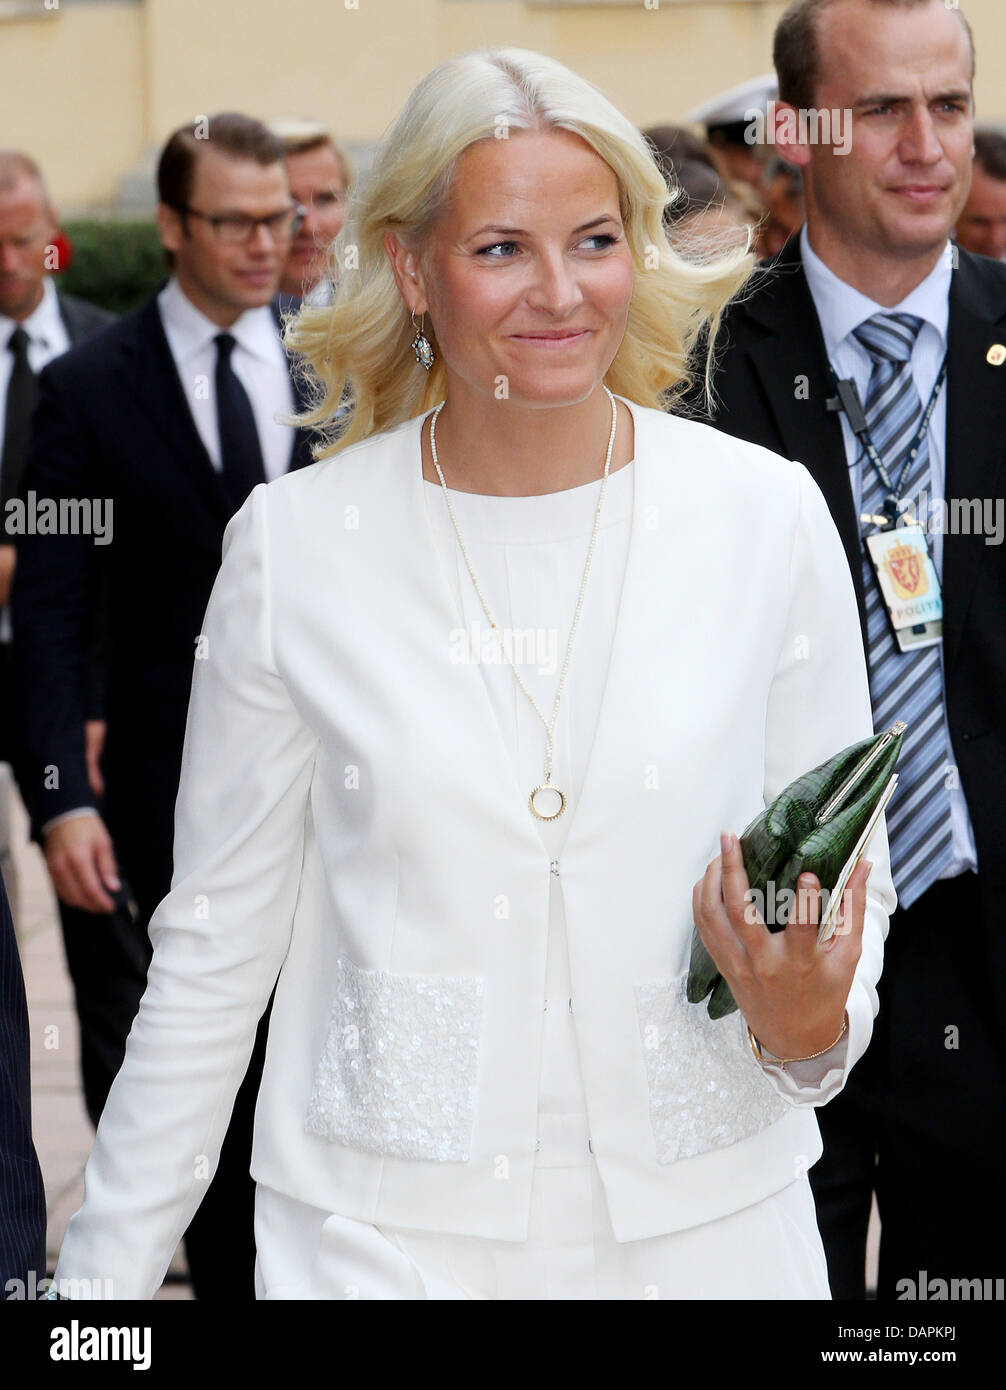 Norwegische Kronprinzessin Mette-Marit besucht die Feierlichkeiten anlässlich der 10. Hochzeitstag des norwegischen Kronprinzen-Paares an der Universität in Oslo, Norwegen, 25. August 2011. Foto: Patrick van Katwijk Stockfoto